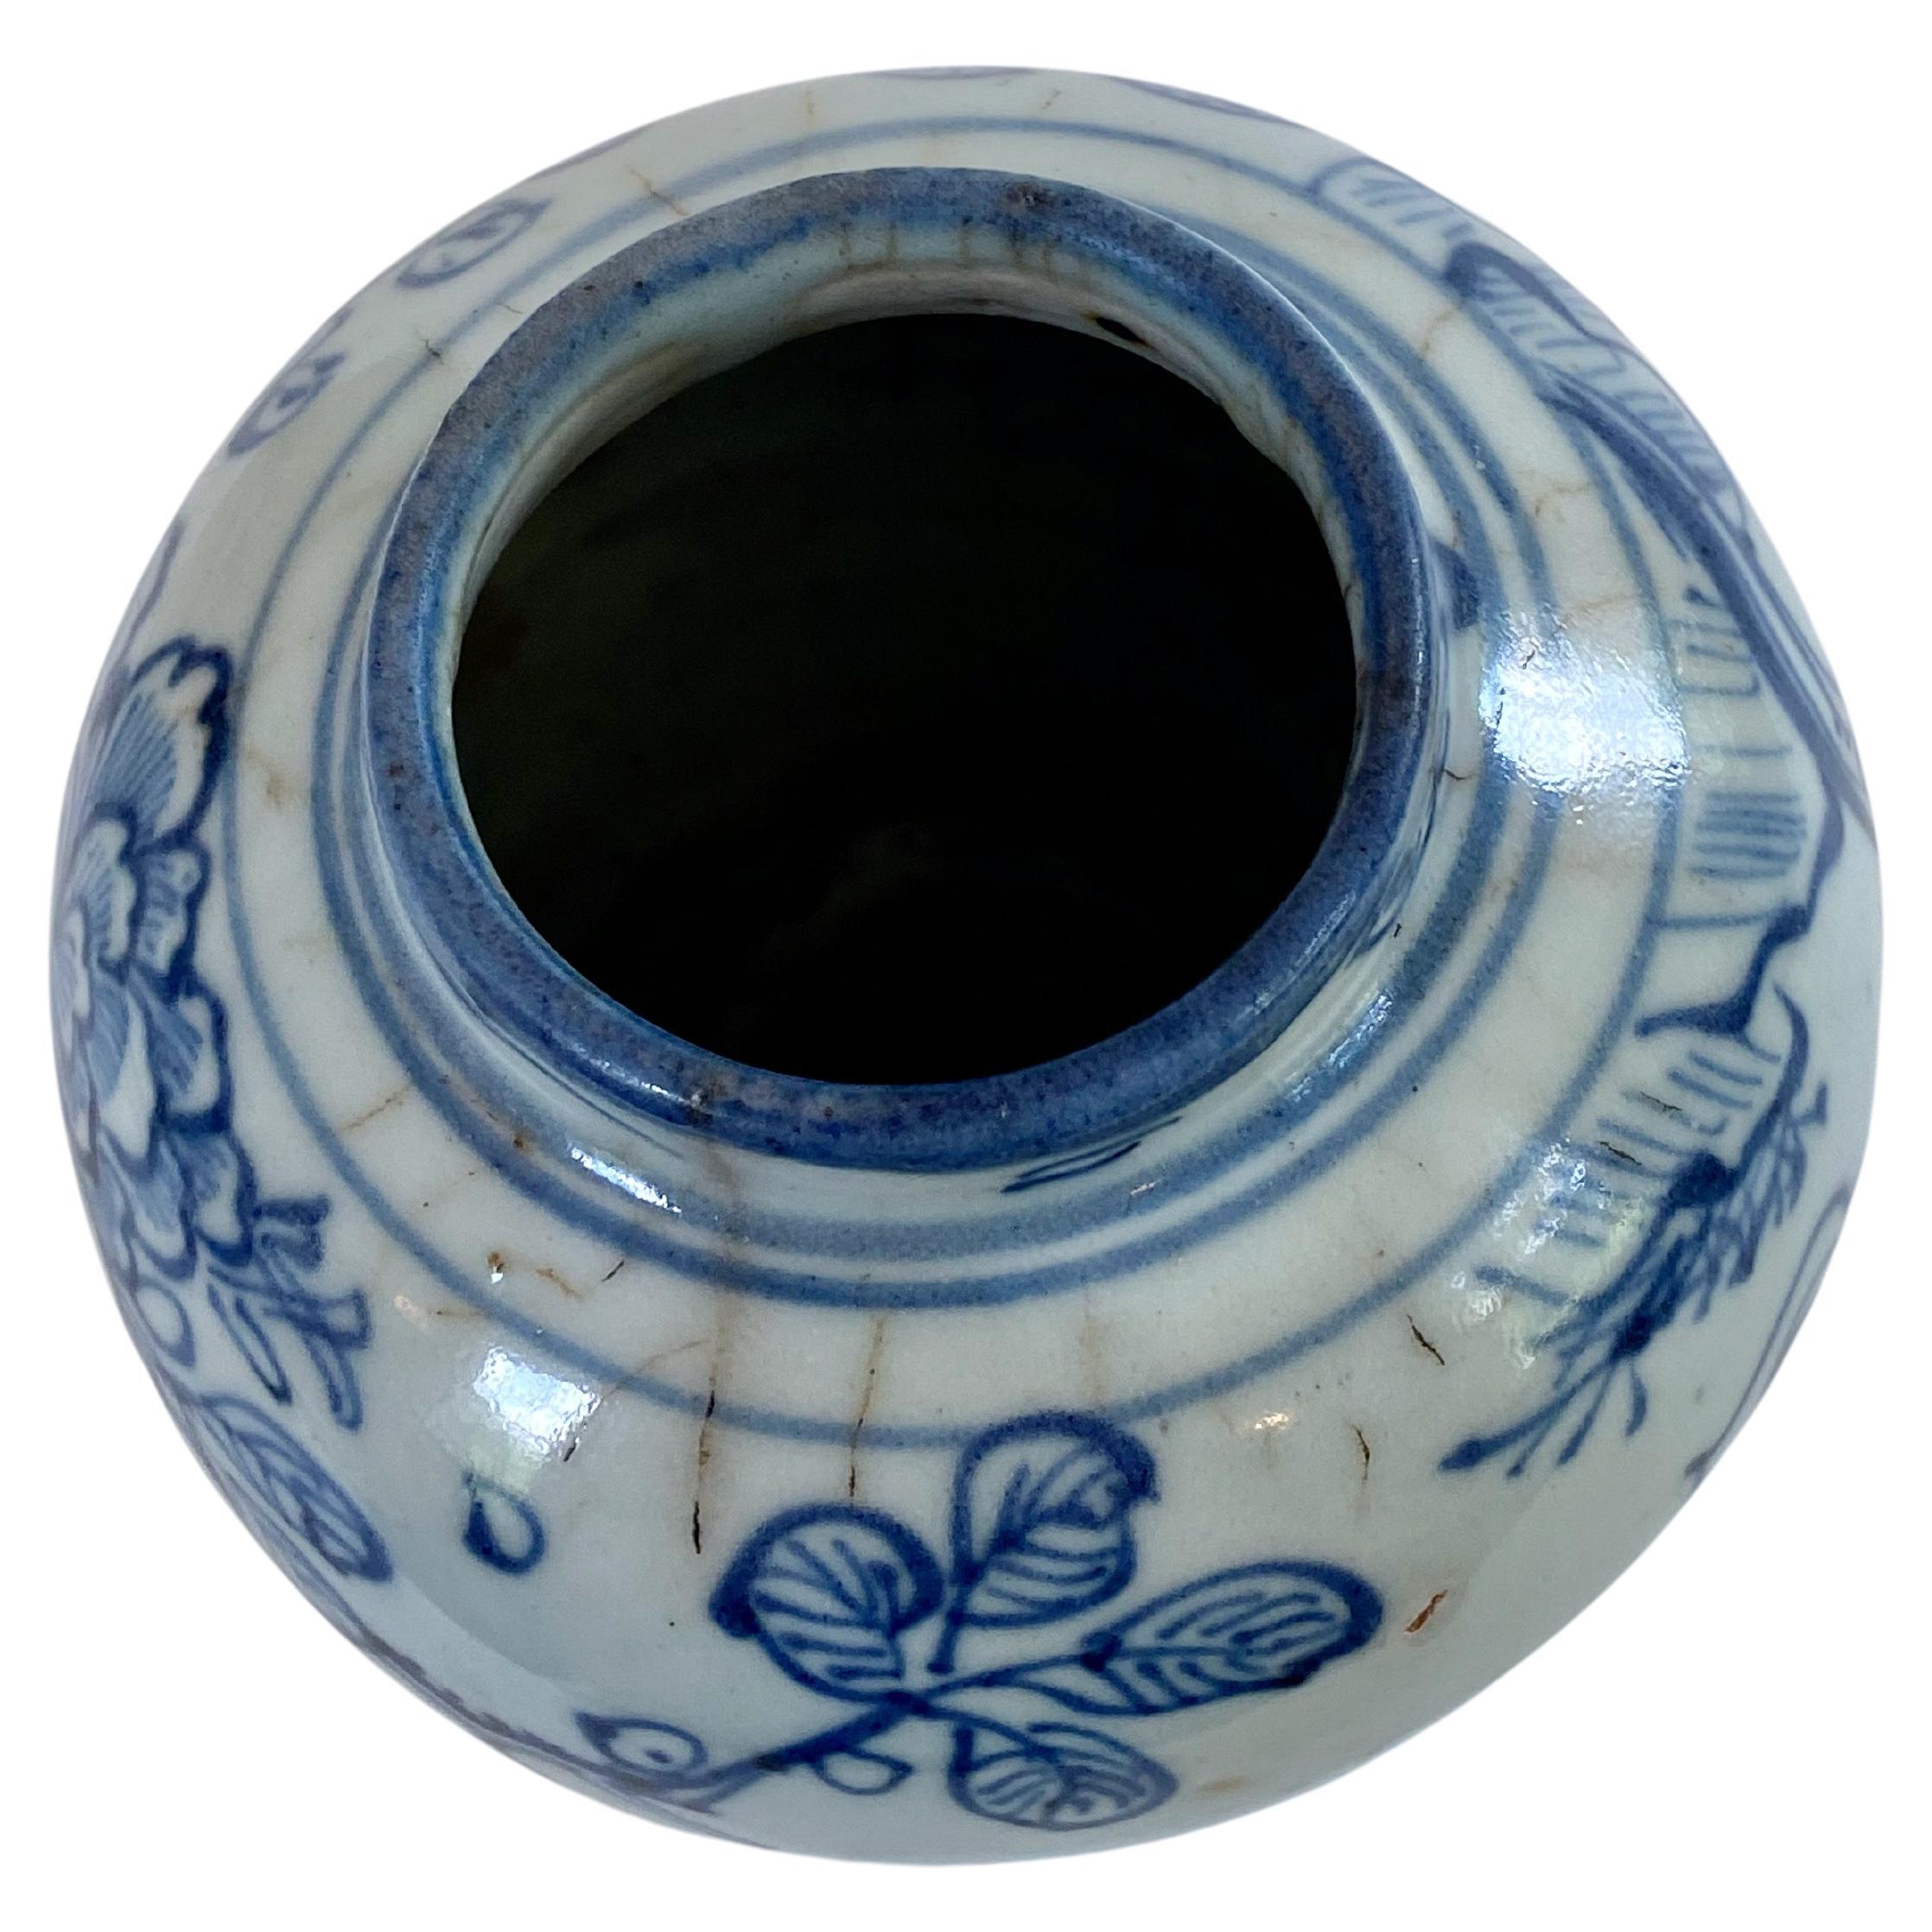 blue and white vases